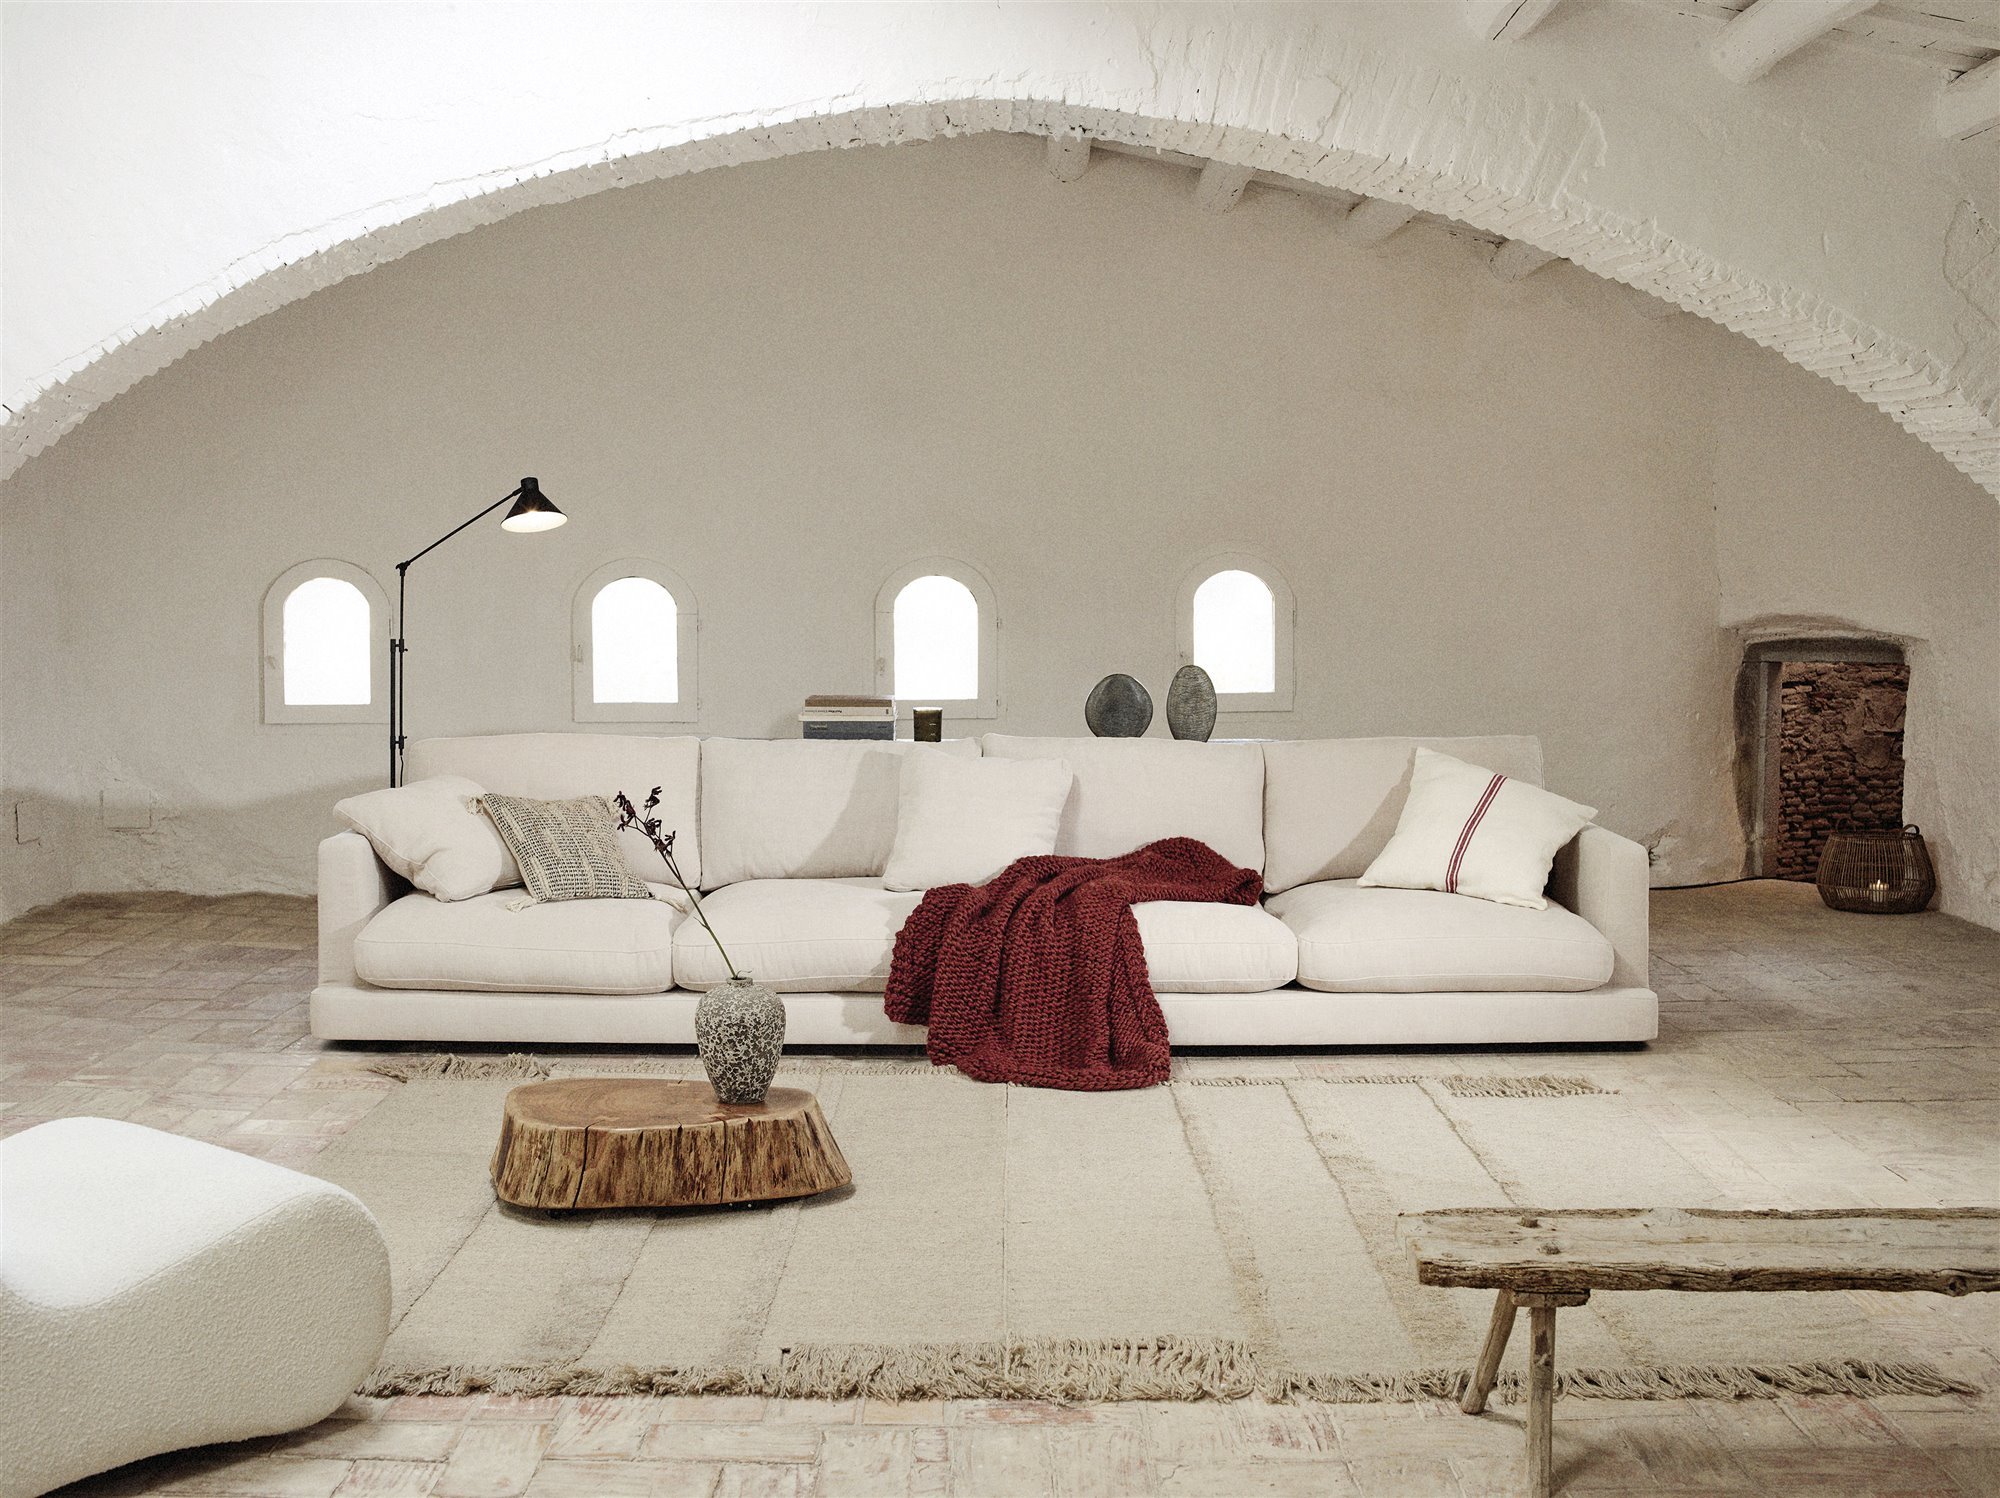 Calma House ofrece cojines decorativos para cama con diseños exclusivos y de  excelente calidad